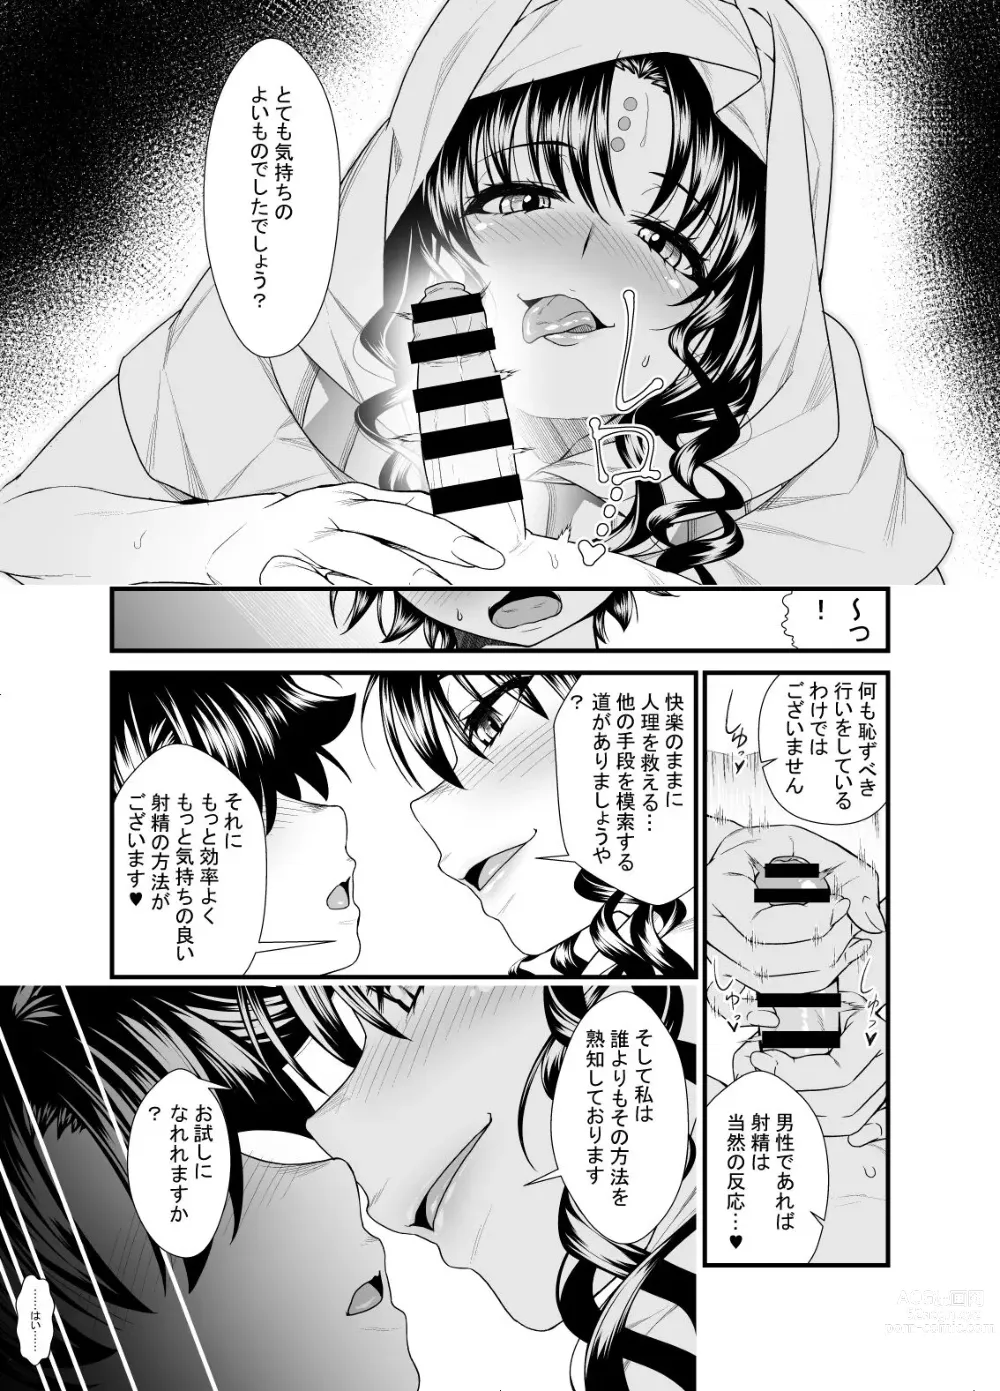 Page 6 of doujinshi OneShota Manga #01b